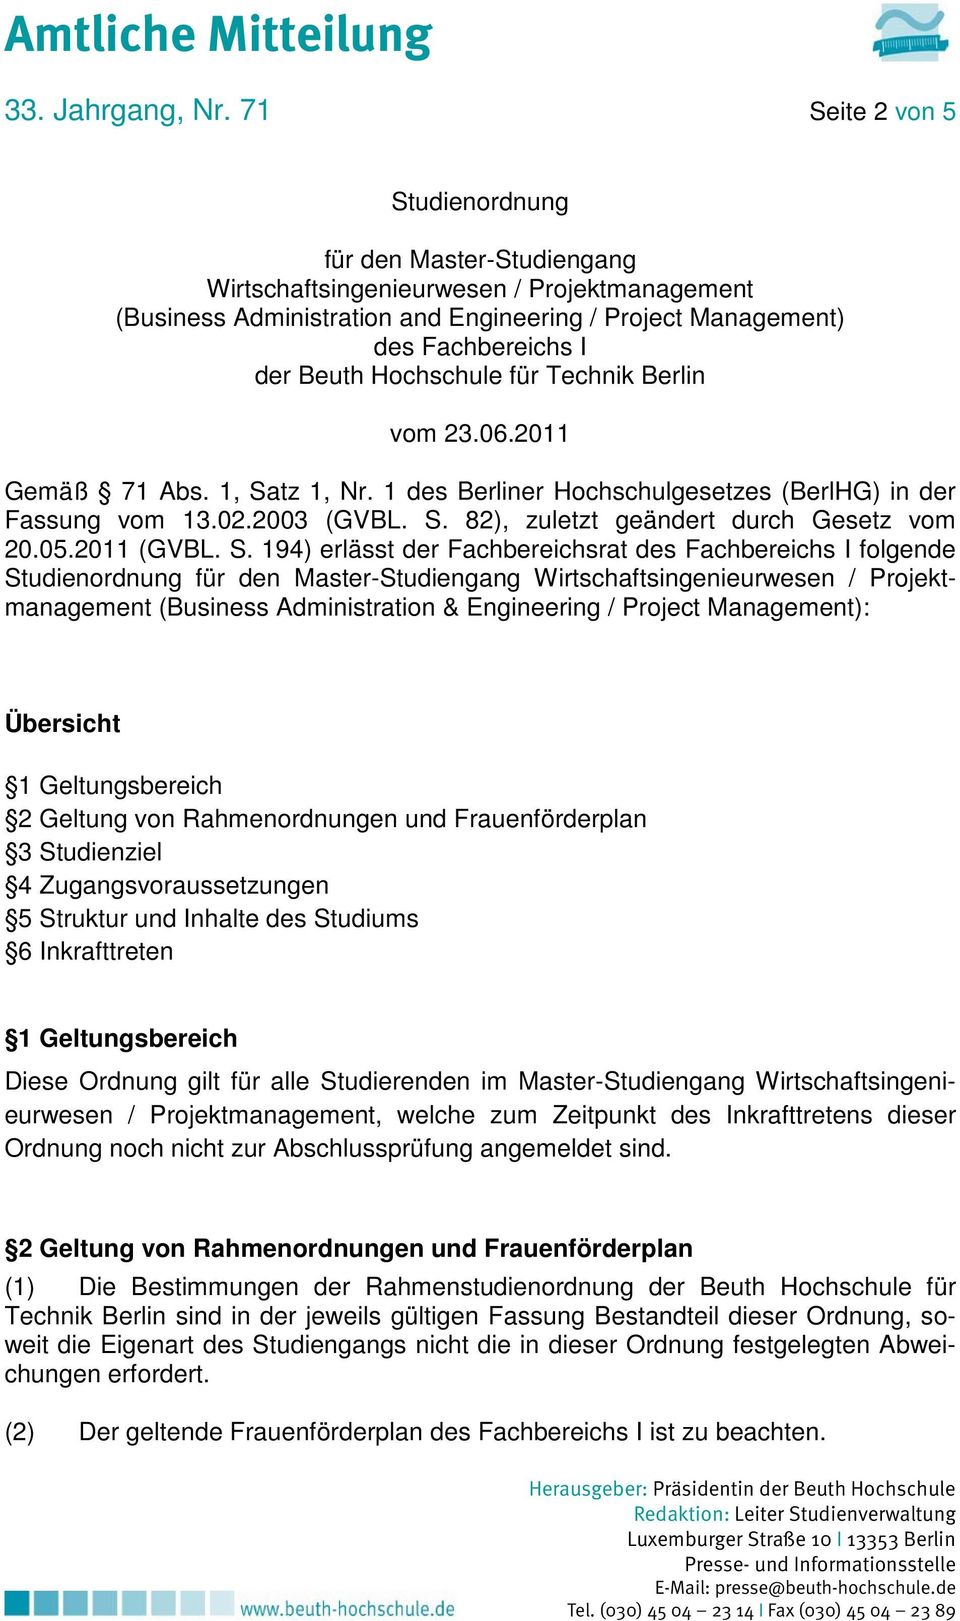 Hochschule für Technik Berlin vom 23.06.2011 Gemäß 71 Abs. 1, Satz 1, Nr. 1 des Berliner Hochschulgesetzes (BerlHG) in der Fassung vom 13.02.2003 (GVBL. S. 82), zuletzt geändert durch Gesetz vom 20.